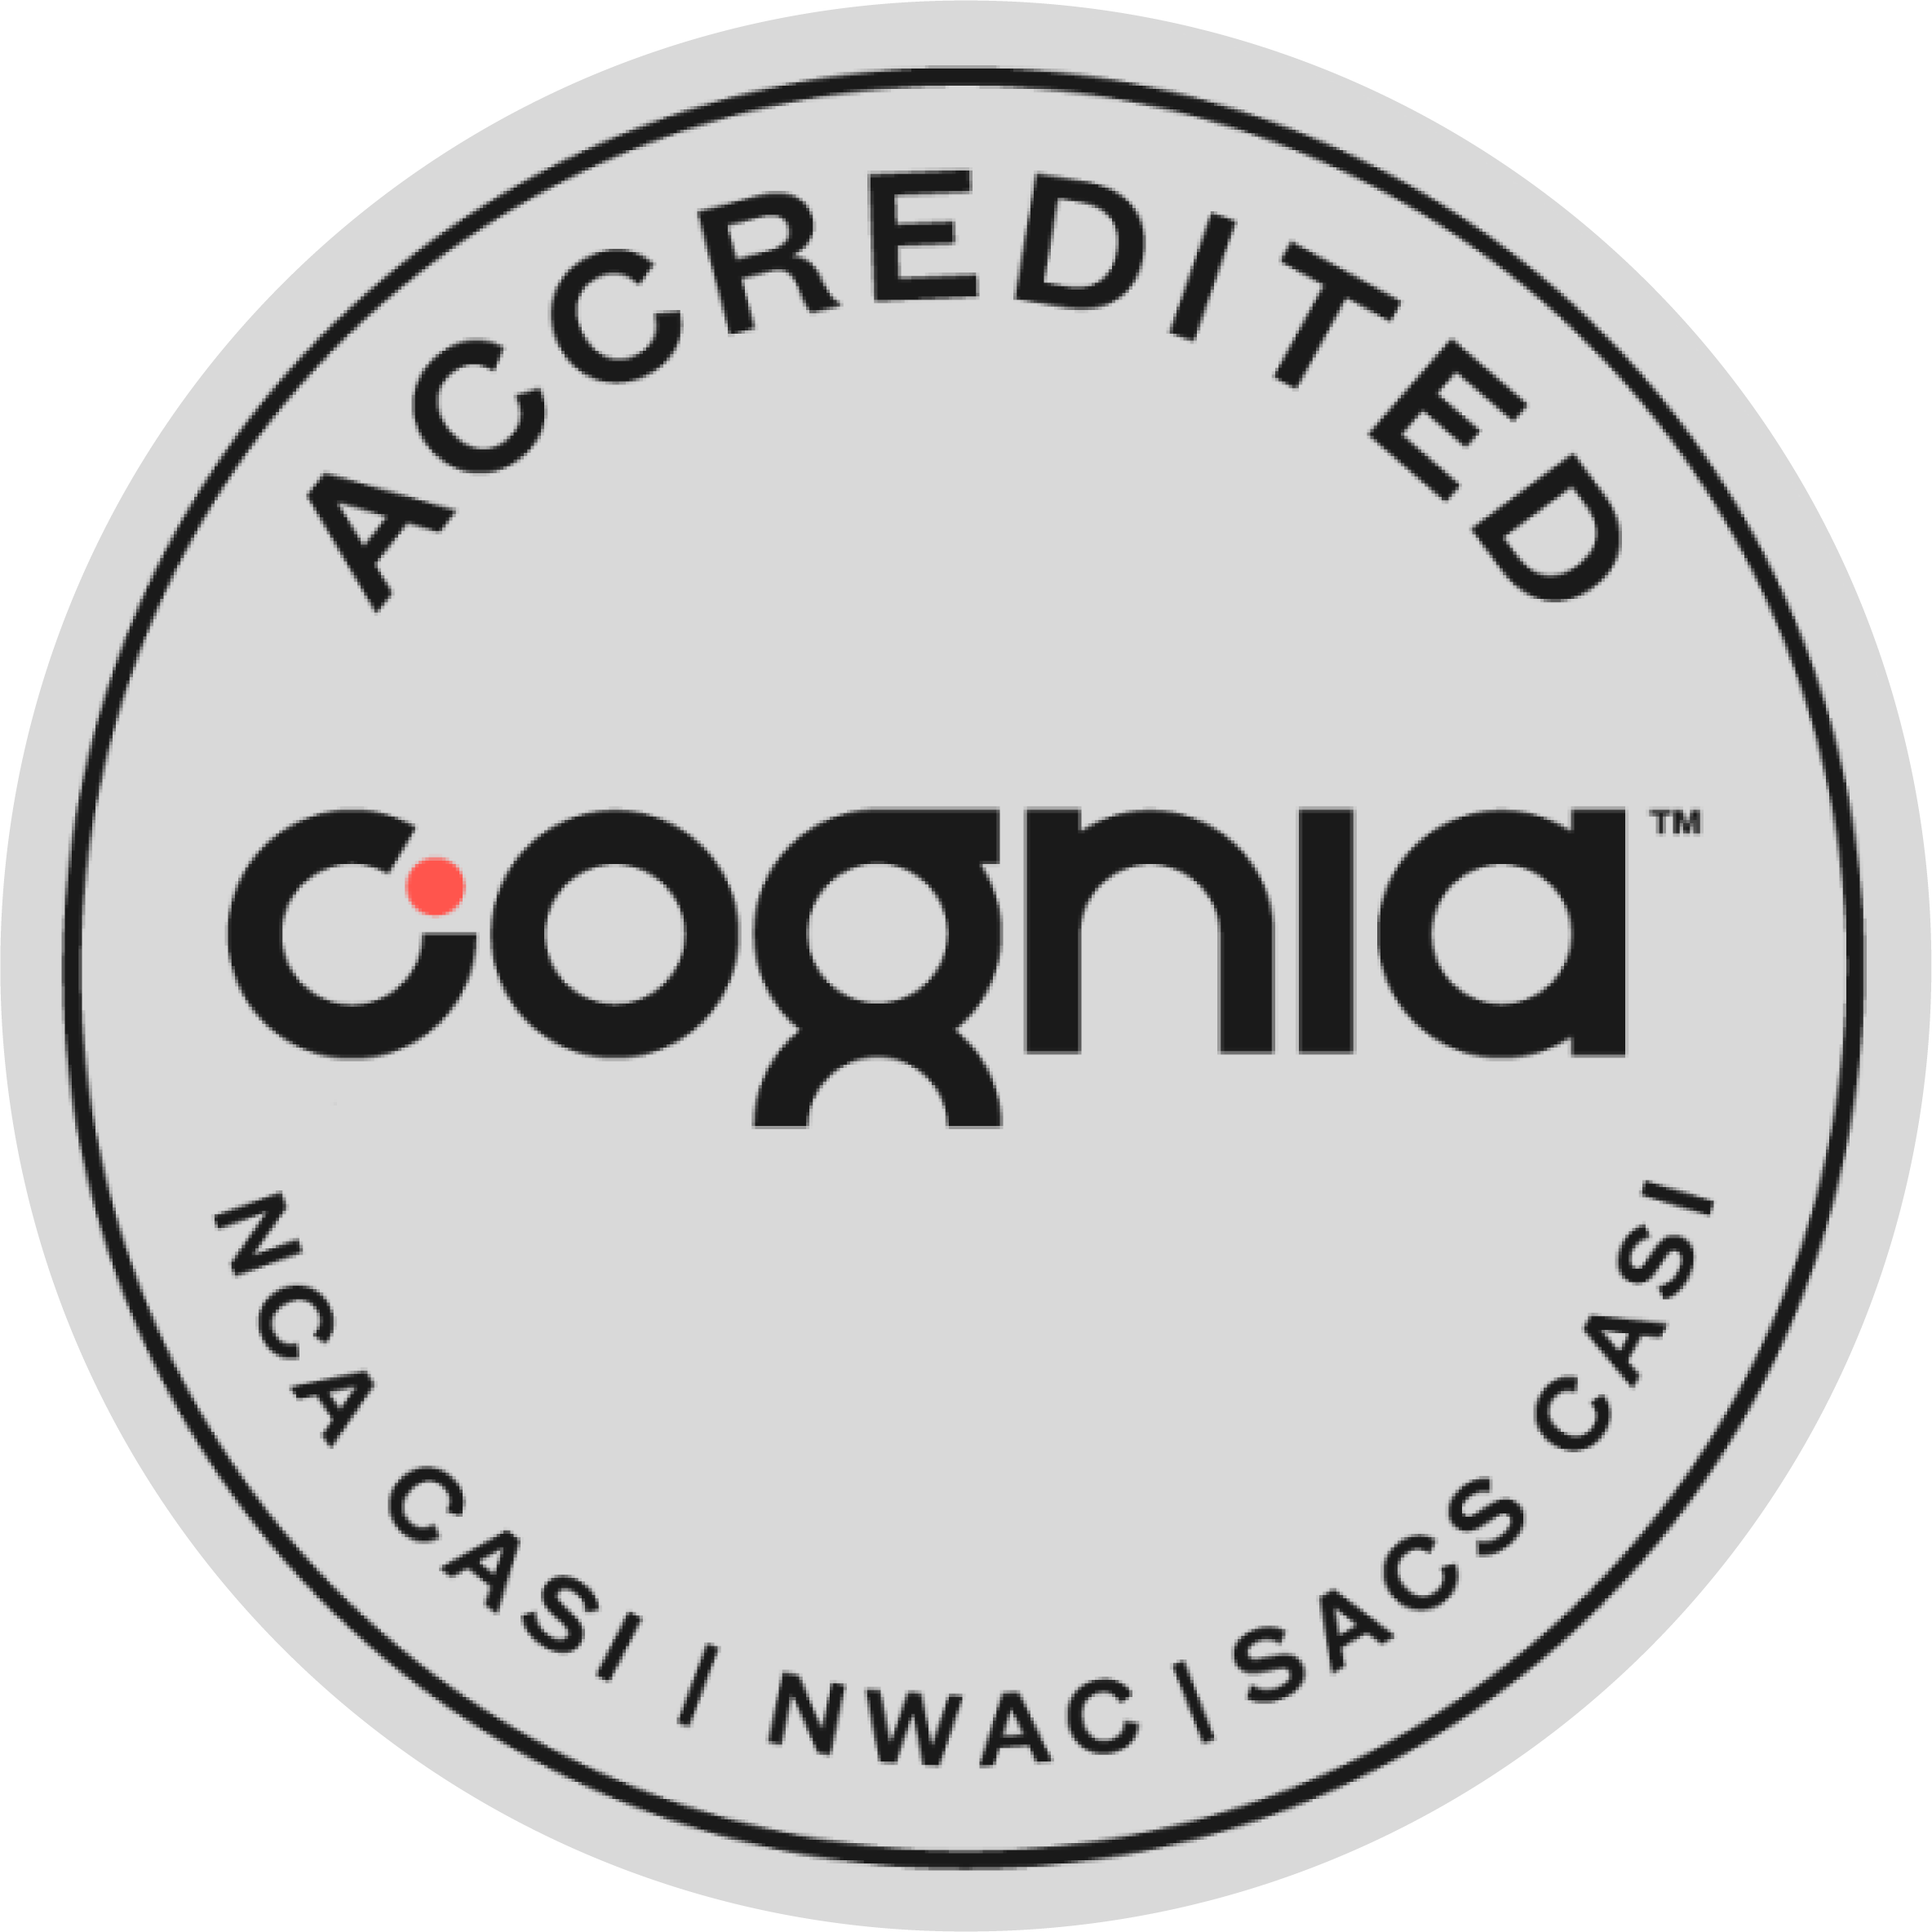 A gray circular logo for Cognia Accrediation.